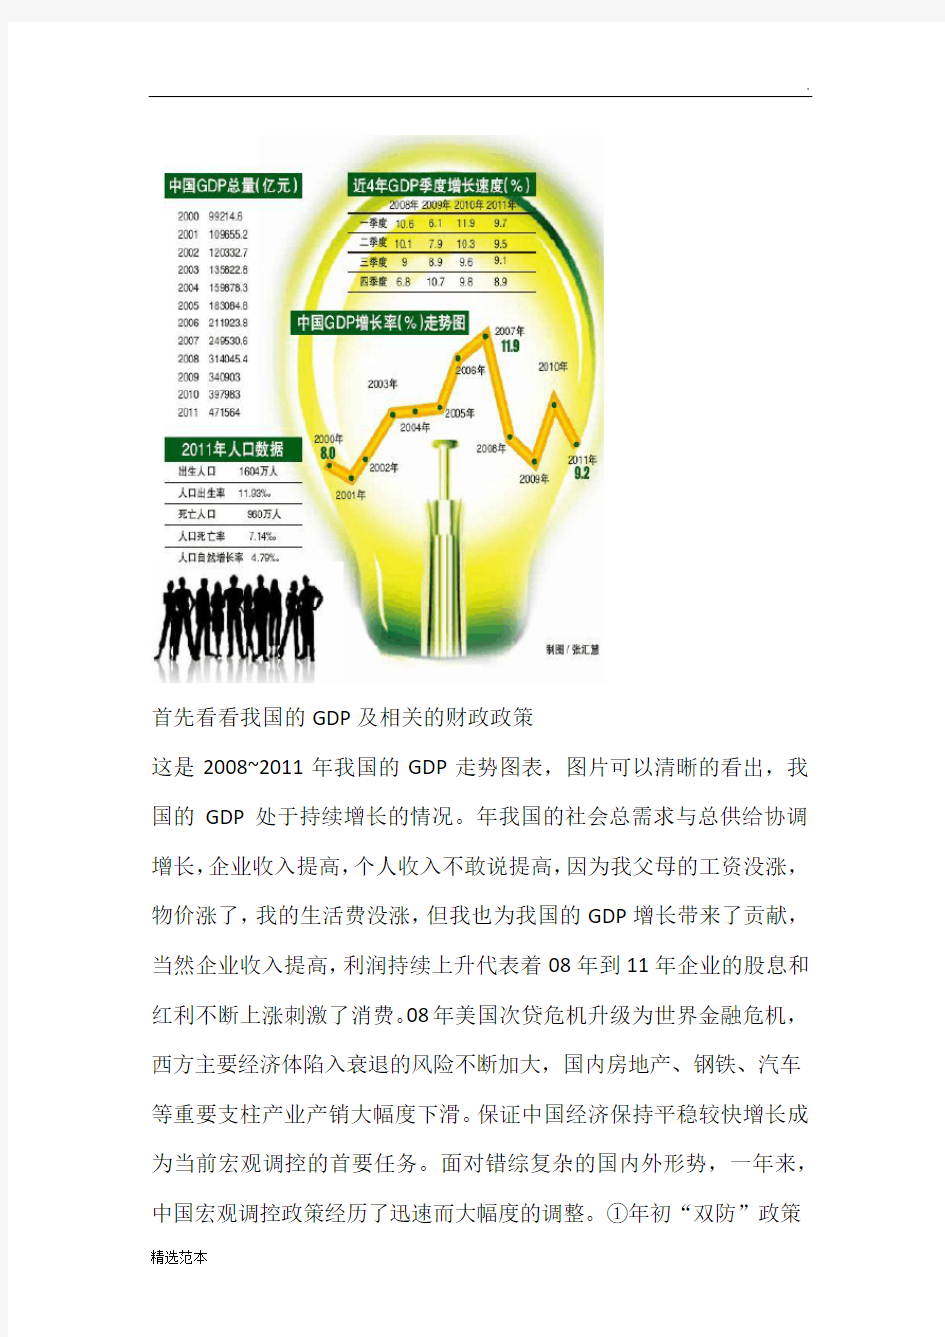 宏观经济学分析中国经济